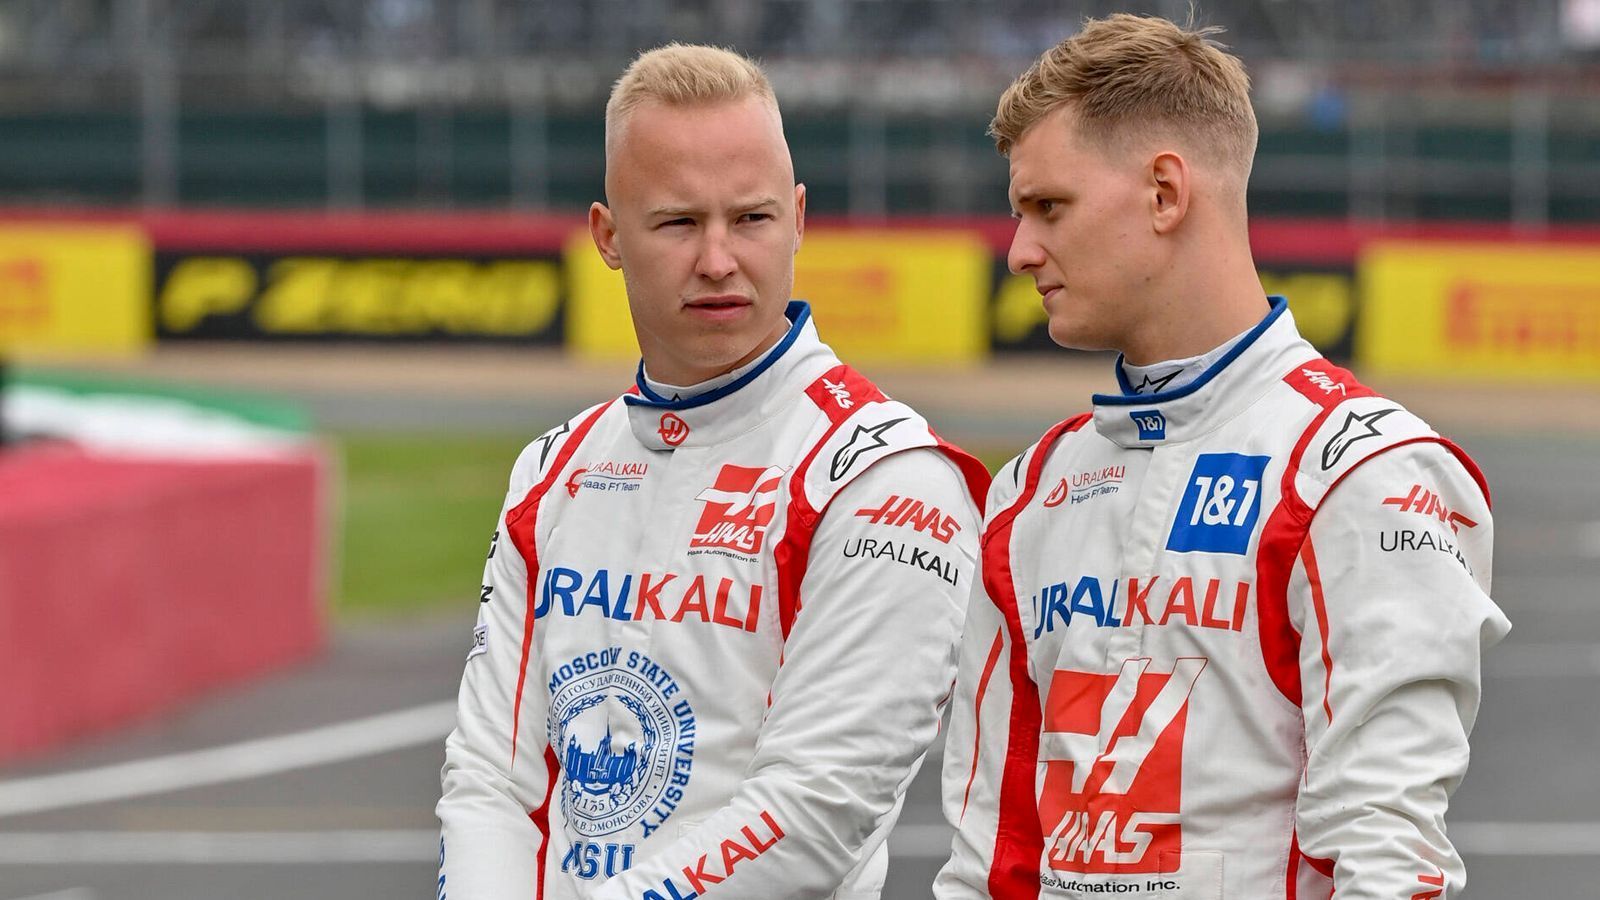 
                <strong>Haas</strong><br>
                Mick Schumacher geht auch in seiner zweiten Formel-1-Saison für Haas an den Start. "Als Teil des Fahrerfelds in der Formel 1 lebe ich meinen Traum", wird Schumacher in einer Team-Mitteilung zitiert: "Das erste Jahr mit Haas ist sehr spannend, ich bin sicher, dass ich all die Erfahrungen, die ich sammle, im kommenden Jahr einbringen kann." Ursprünglich war auch Nikita Mazepin als Fahrer für Haas vorgesehen. Doch eine Woche nach Beginn der russischen Invasion in die Ukraine am 24. Februar wurde der Vertrag des Russen gekündigt. Auch die Zusammenarbeit mit Sponsor Uralkali, der Firma, an der Mazepins Vater Dmitri die Aktienmehrheit besitzt, wurde sofort beendet. Für Mazepin fährt 2022 Kevin Magnussen an Schumachers Seite.
              